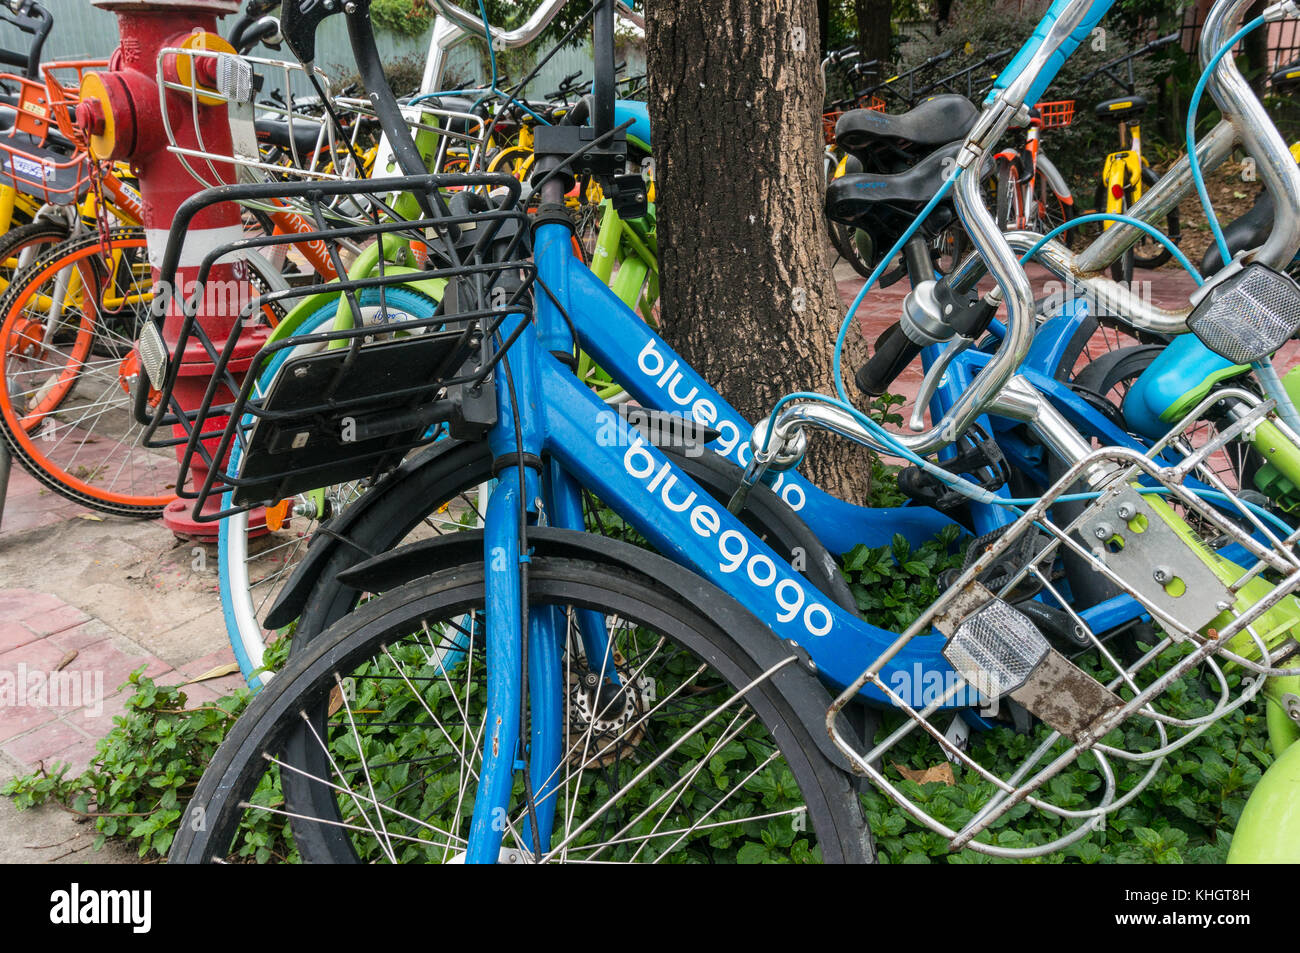 Bluegogo opérateur chinois de vélos en libre-service dans la région de Shenzhen, Chine Banque D'Images